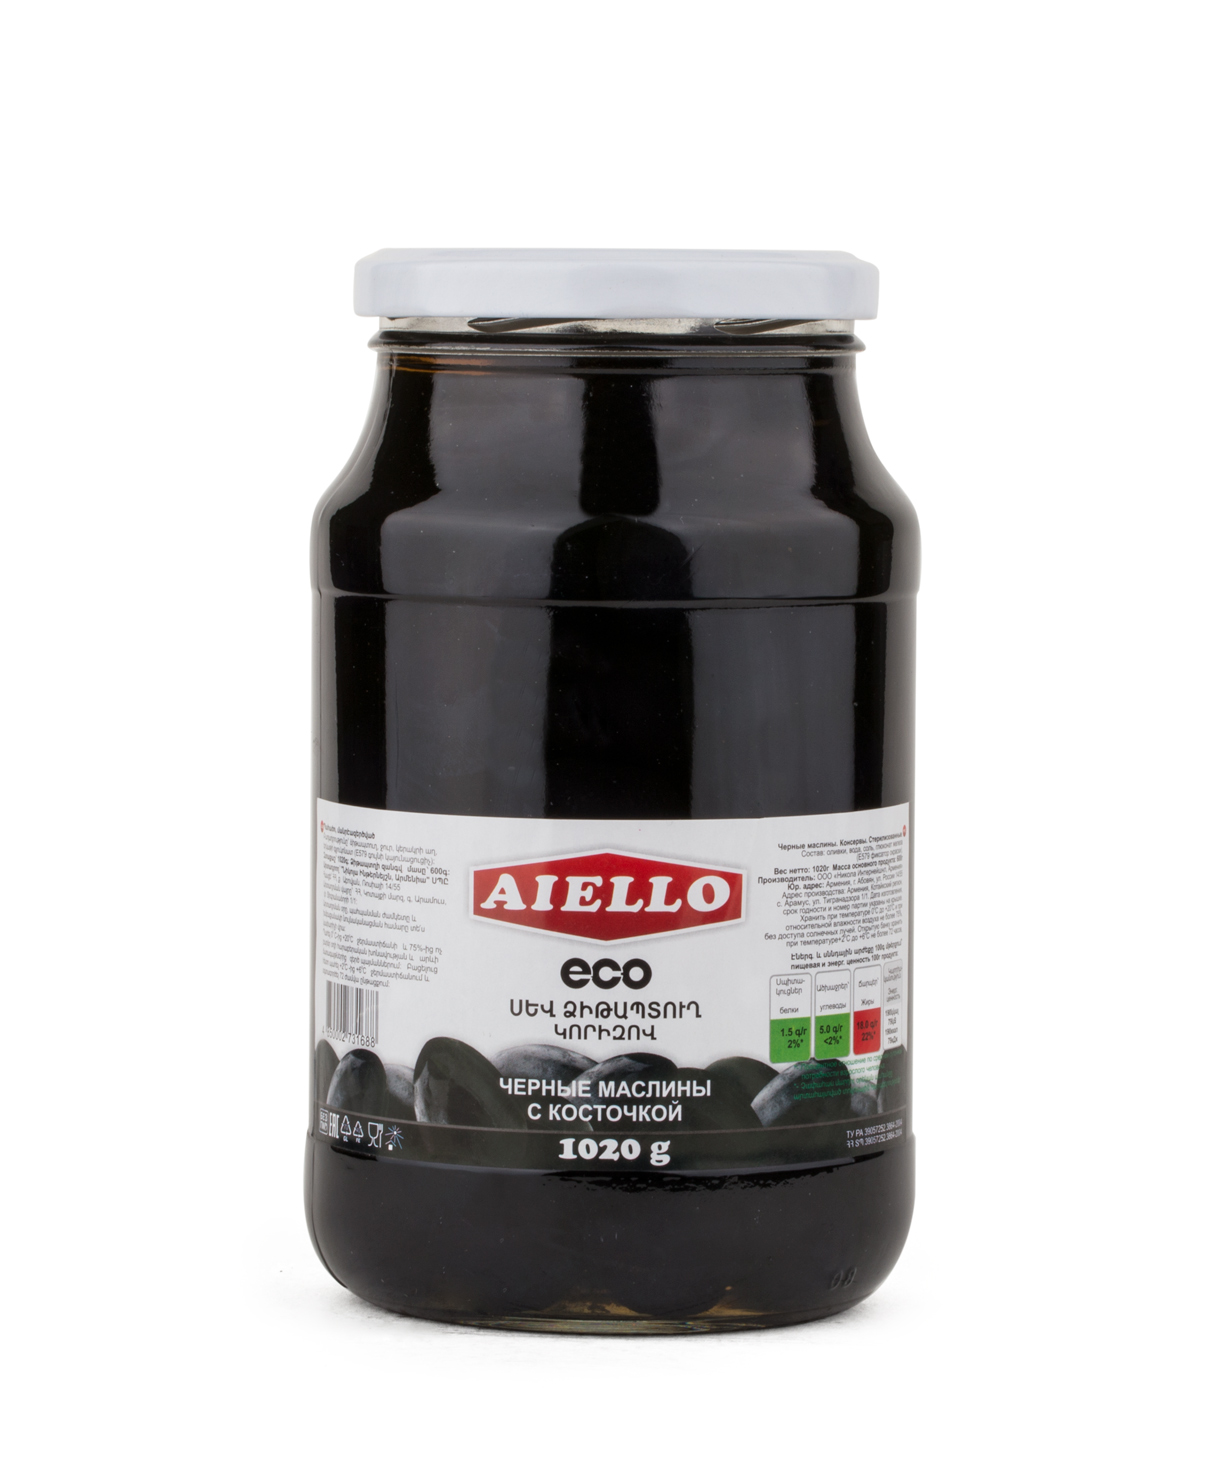 Սև ձիթապտուղ «Aiello Eco» 1020գ